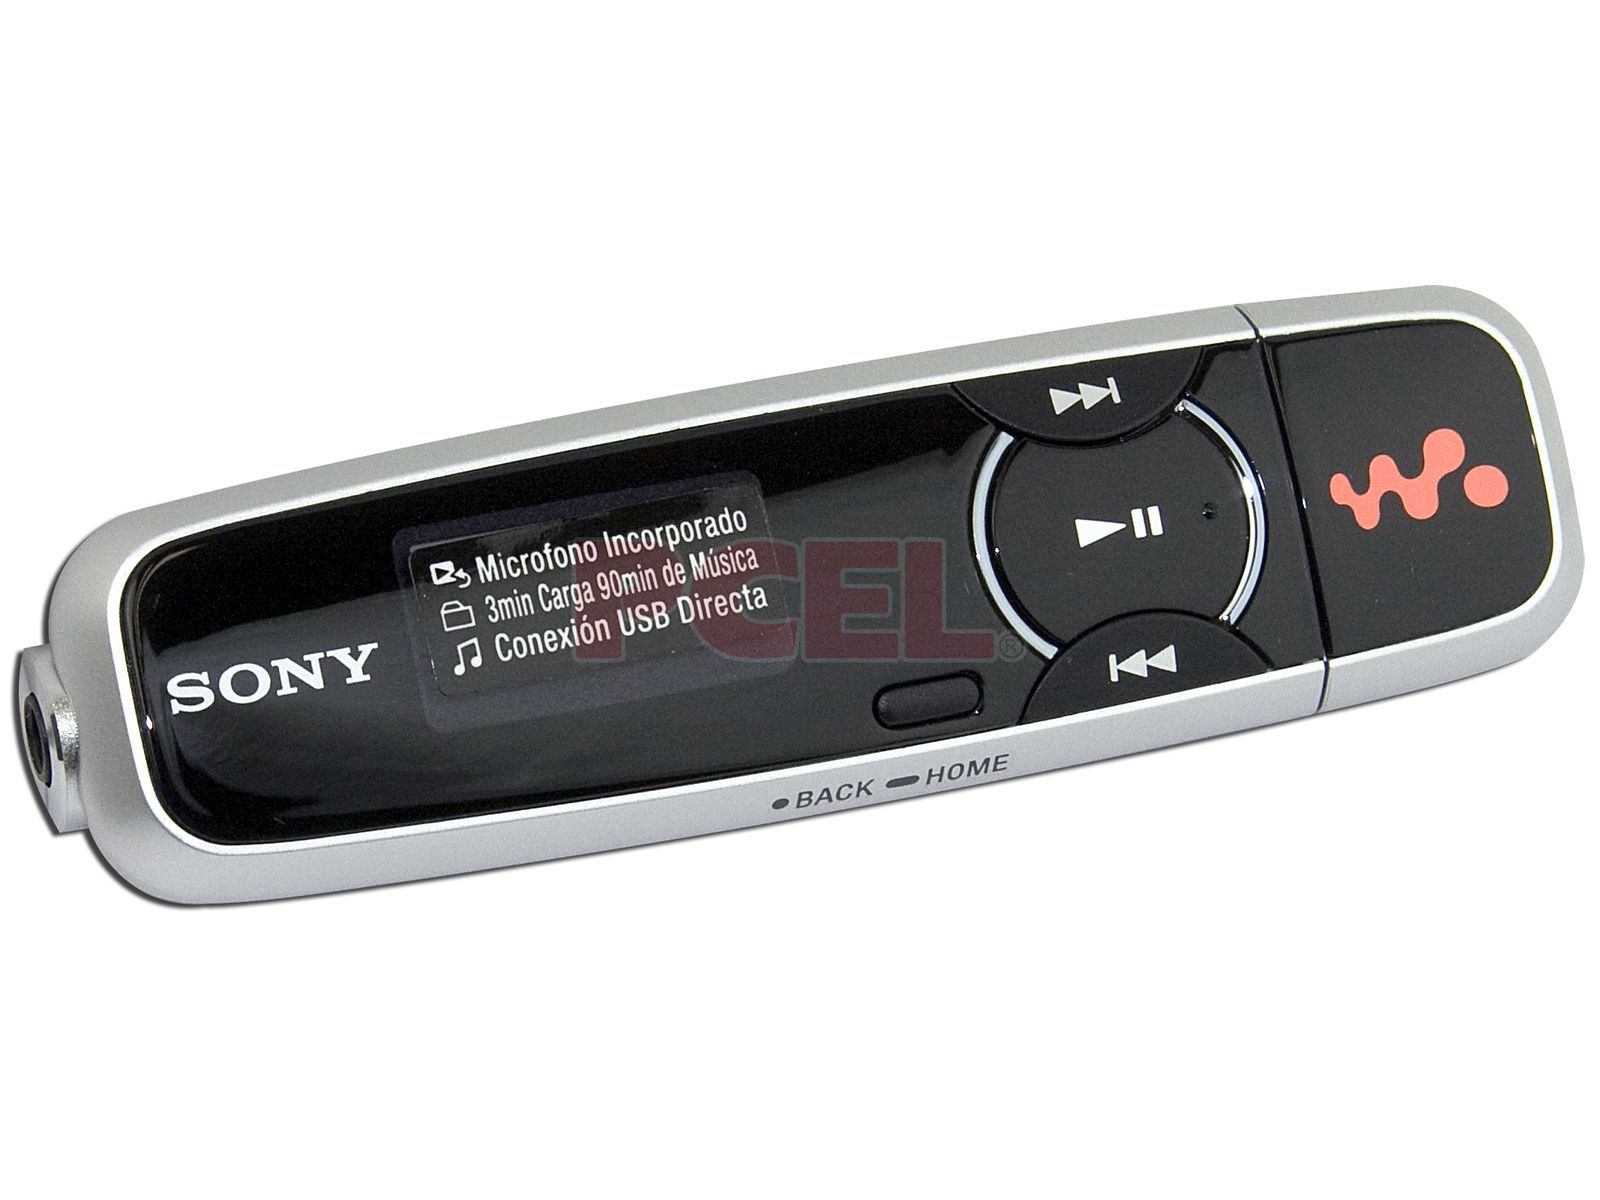 Reproductor Sony Walkman MP3 y Grabación de voz de 2GB. Color Negro